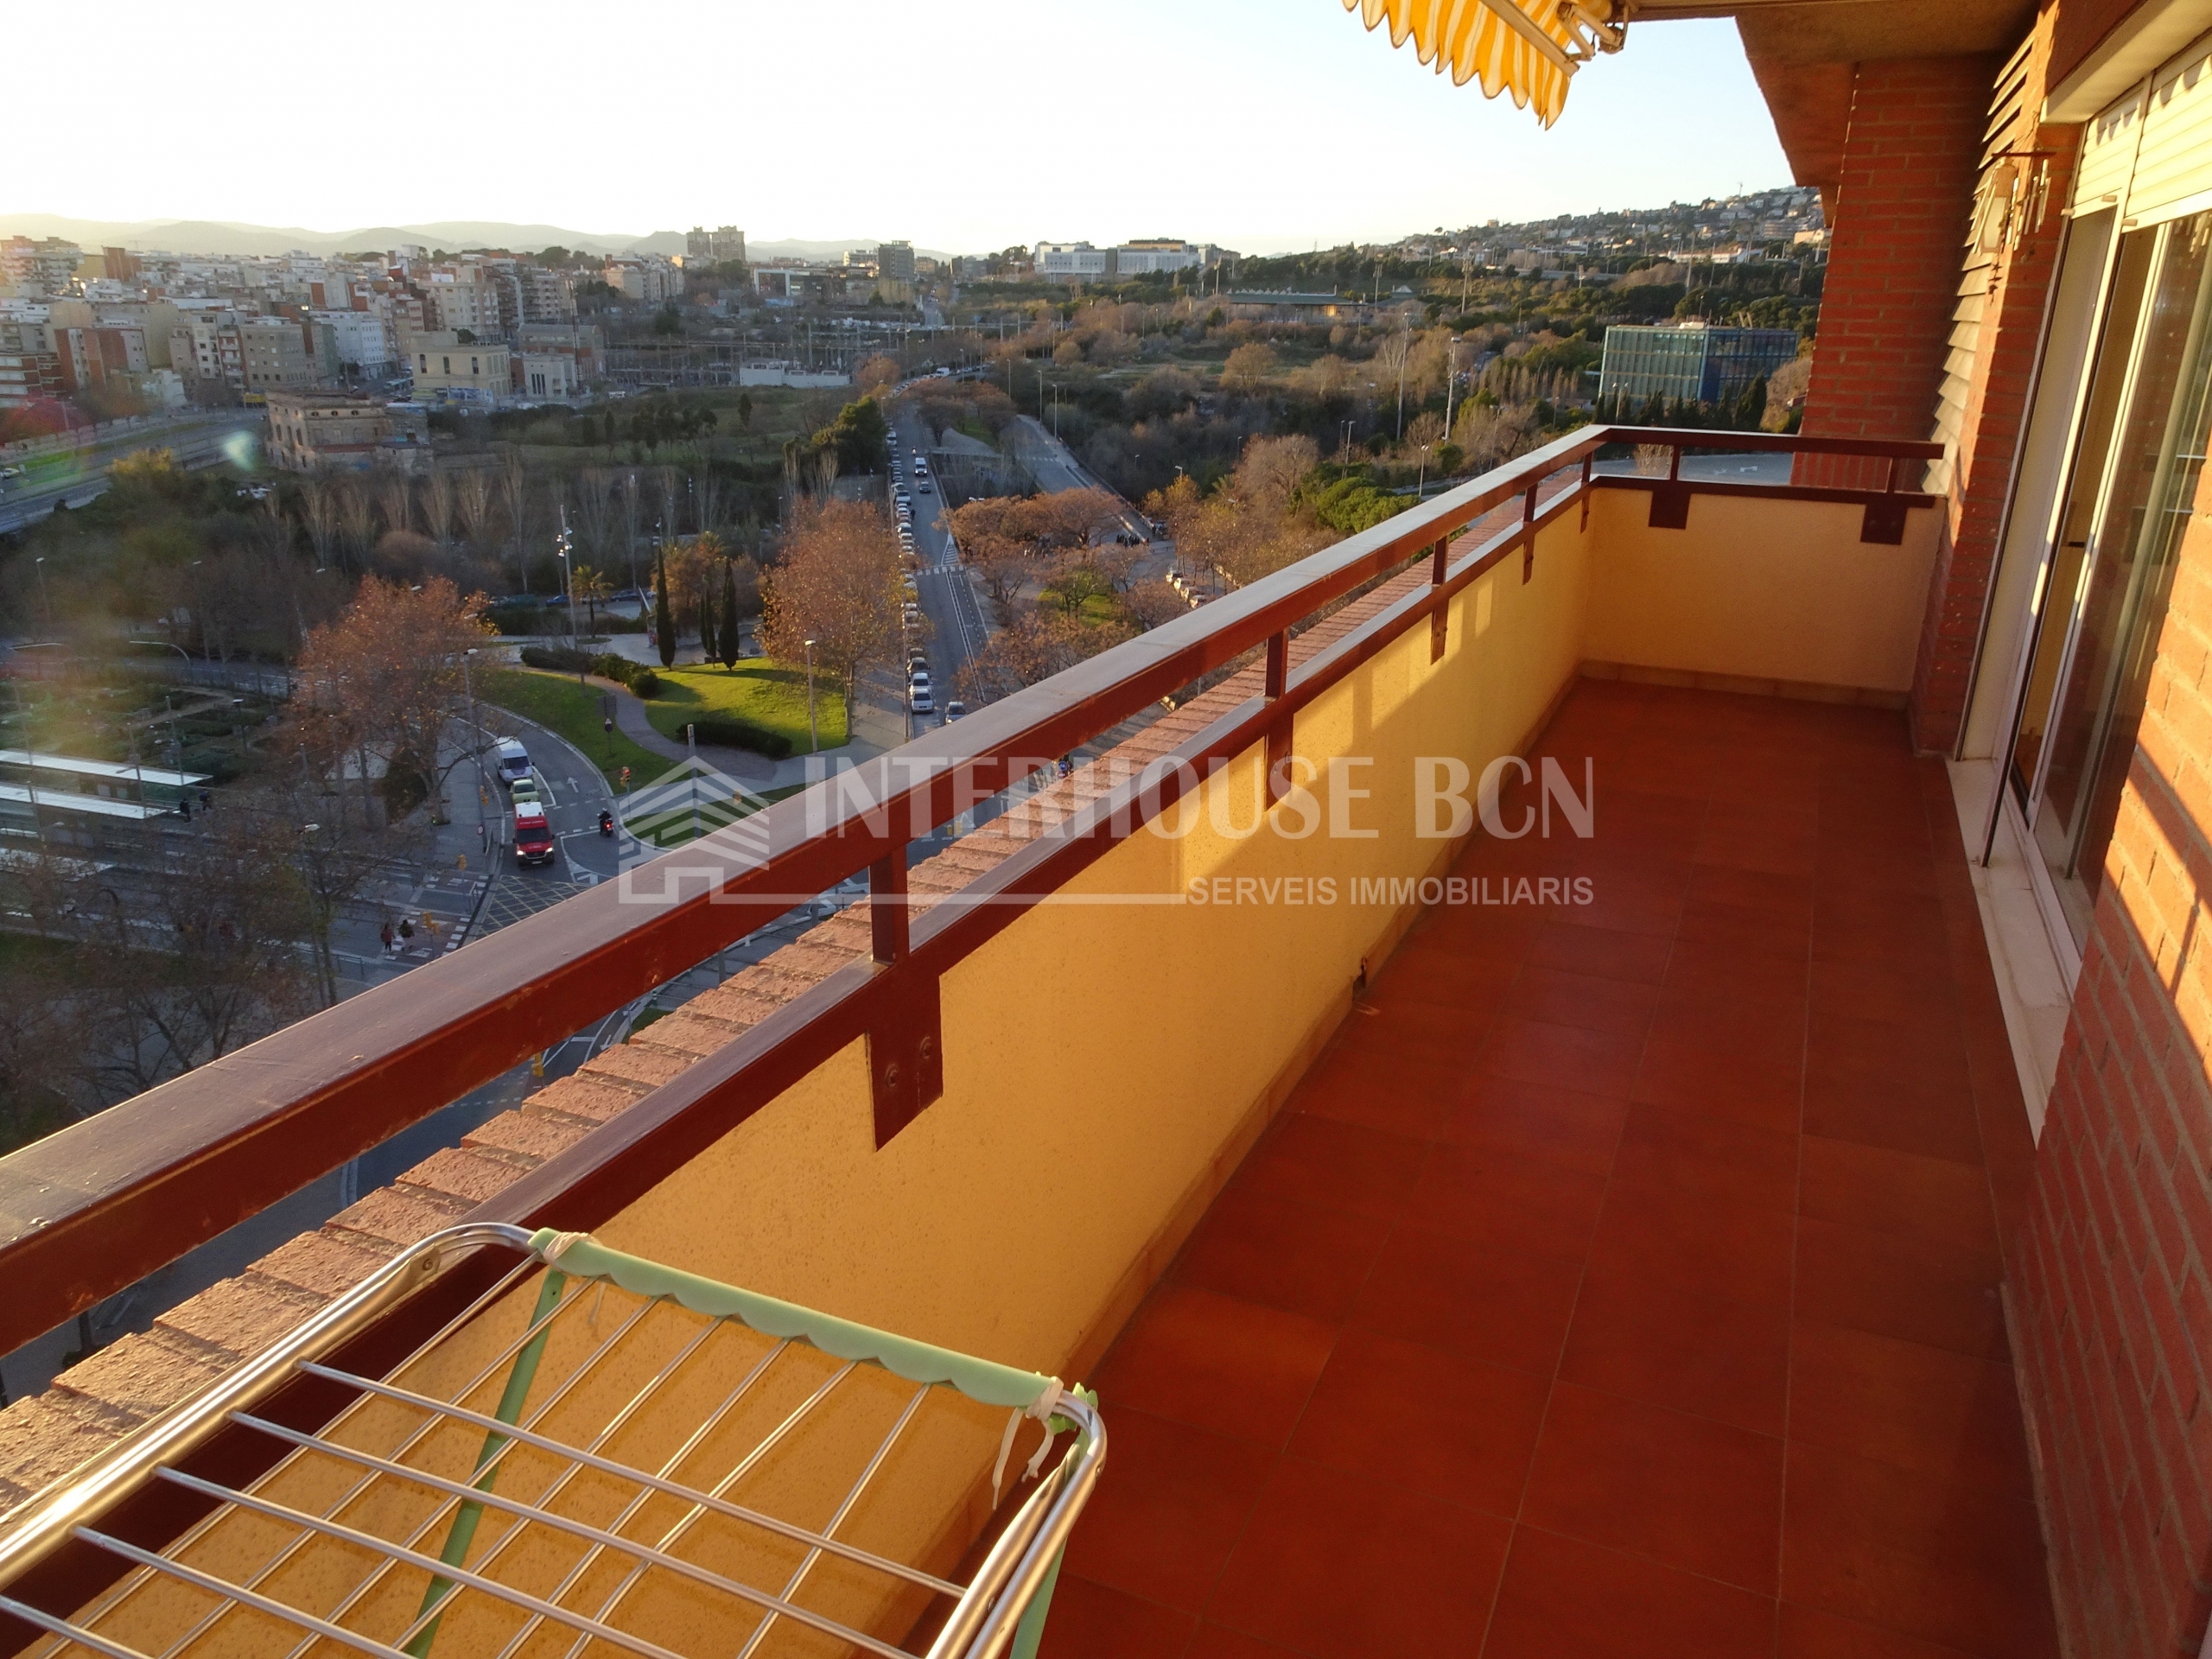 Penhouse atico amueblado con terraza en les corts barcelona